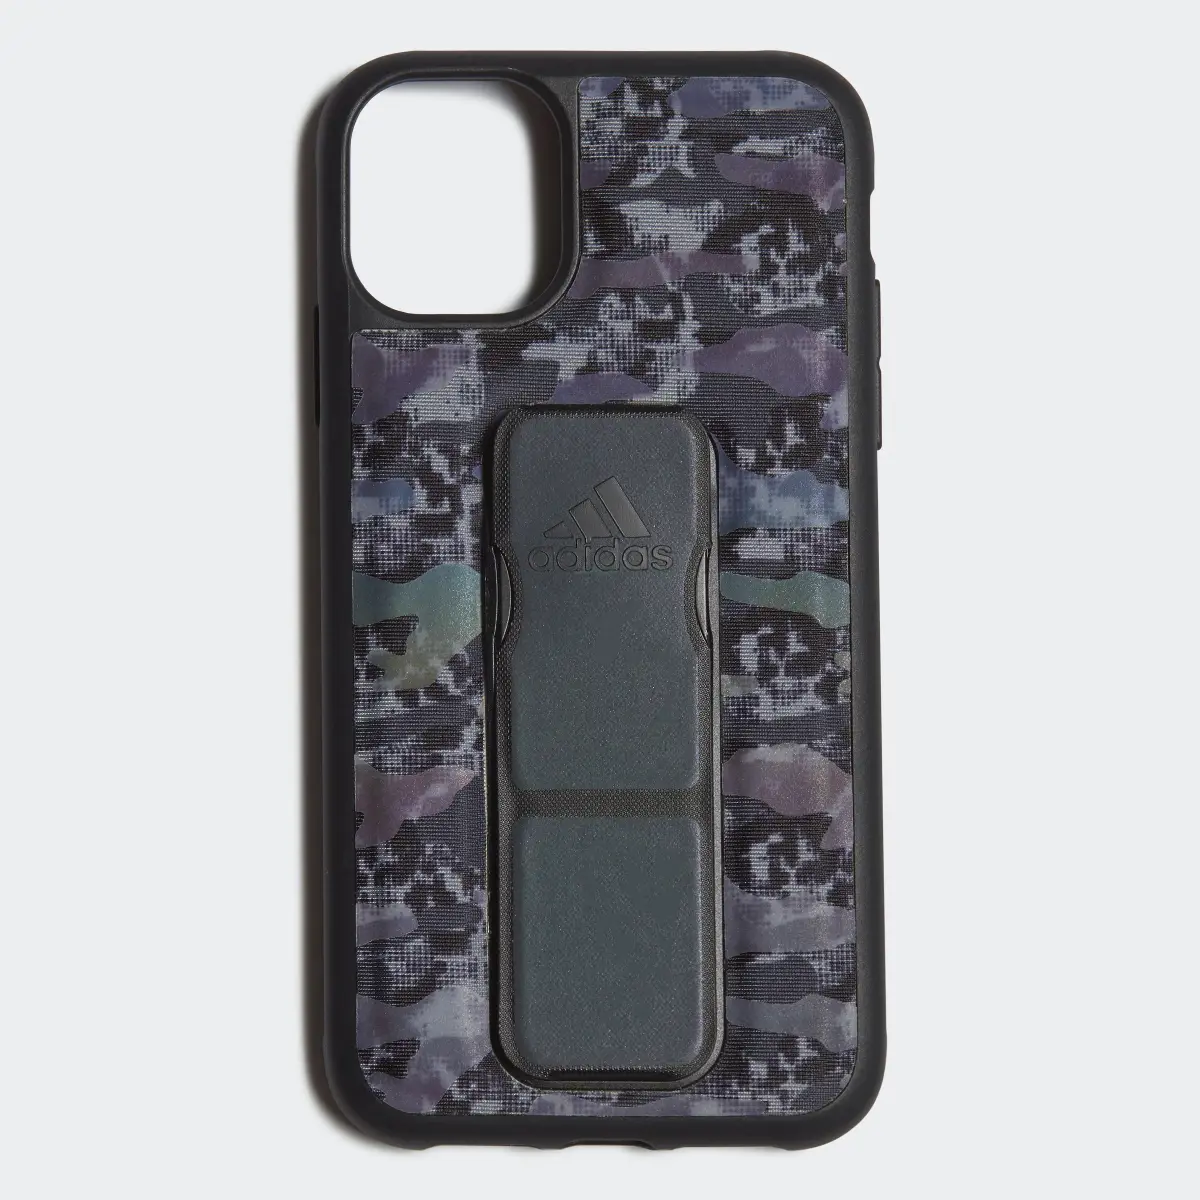 Adidas Grip Case iPhone 11. 2